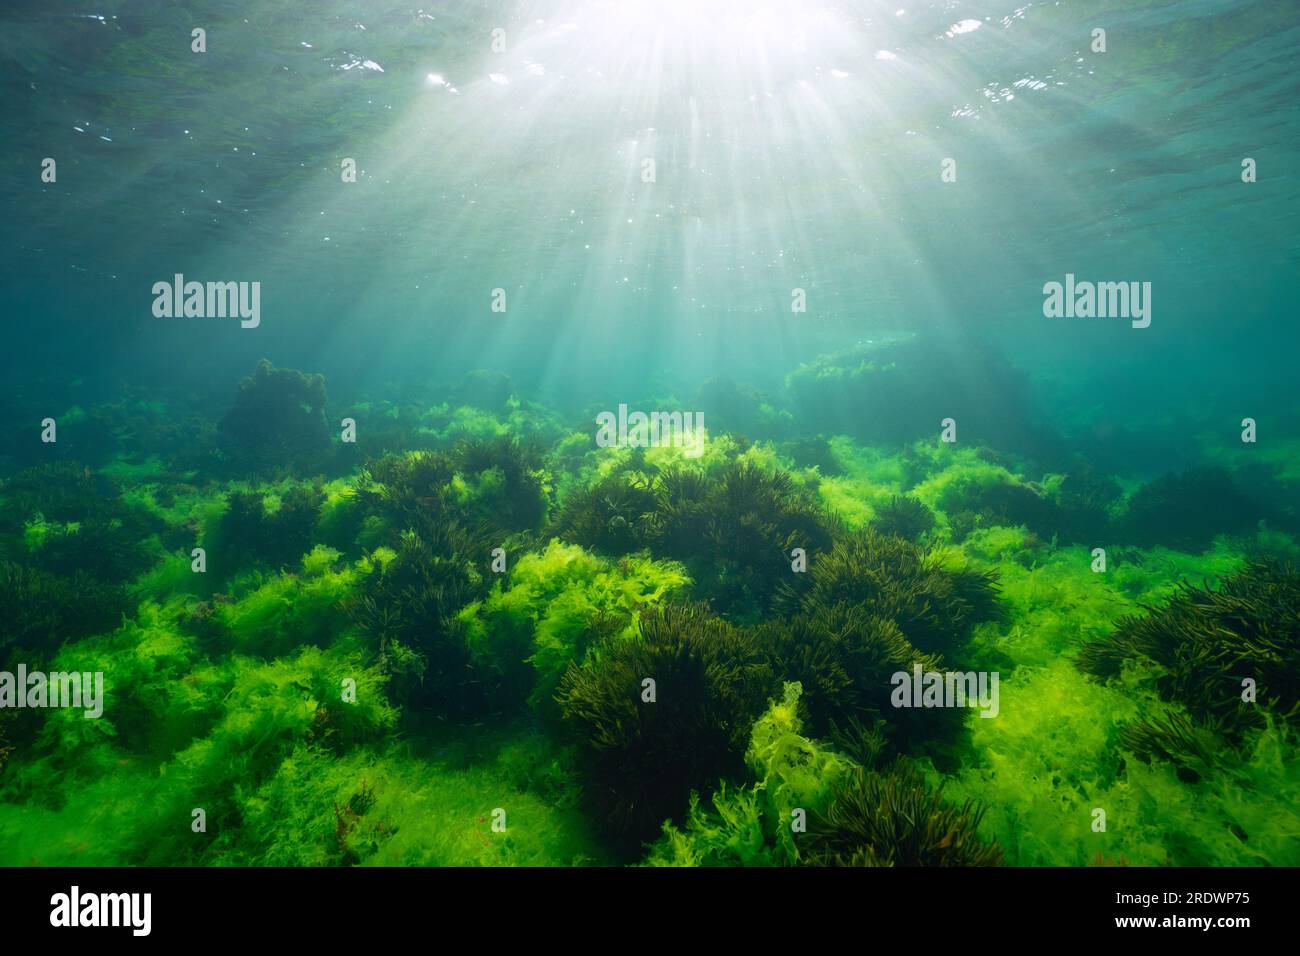 Green algae with sunlight, underwater seascape in the Atlantic ocean, natural scene (Ulva lactuca and Codium tomentosum seaweed), Spain, Galicia Stock Photo